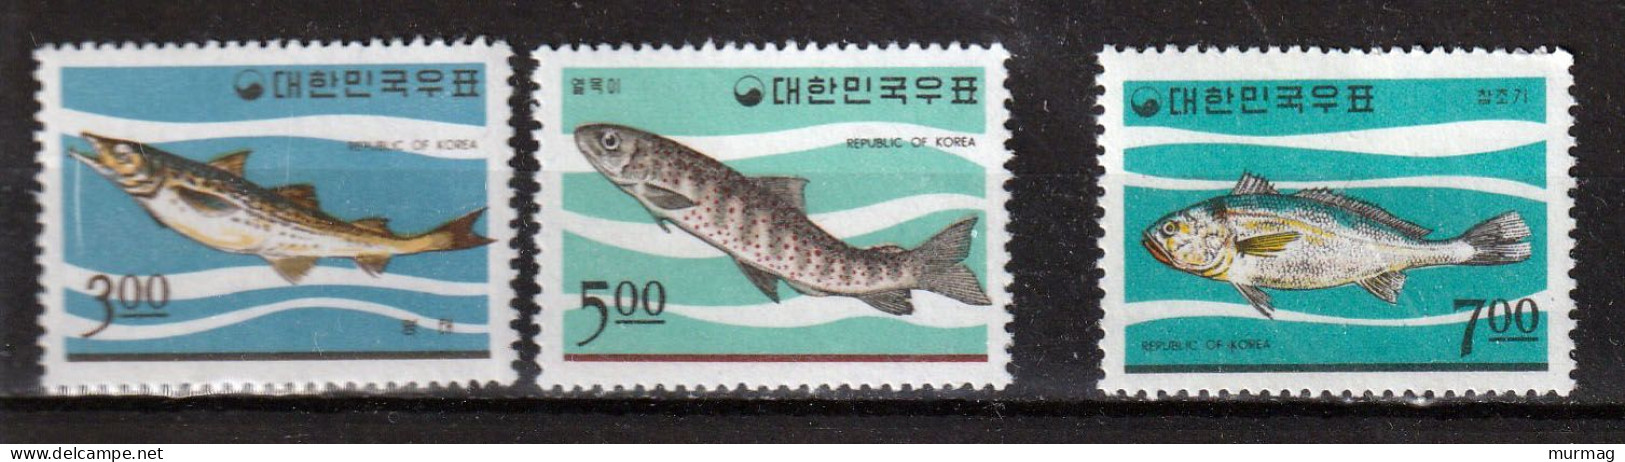 COREE DU SUD - Faune Marine, Poissons - Y&T N° 417-419 - 1966 - MNH - Corea Del Sur